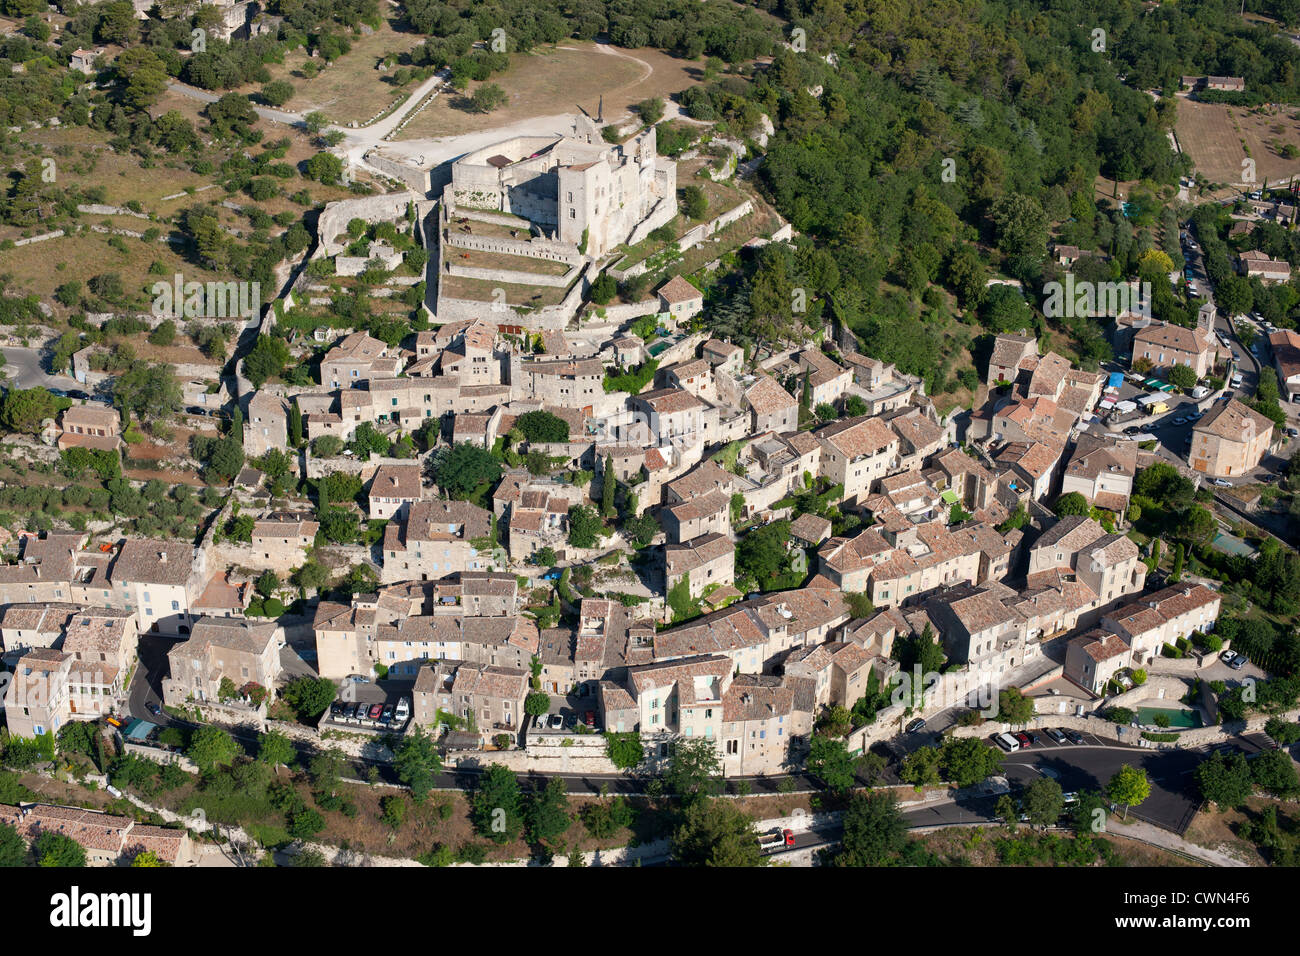 LUFTAUFNAHME. Ein mittelalterliches Dorf auf einem Hügel, gekrönt von einer Burg. Lacoste, Lubéron, Vaucluse, Provence, Frankreich. Stockfoto